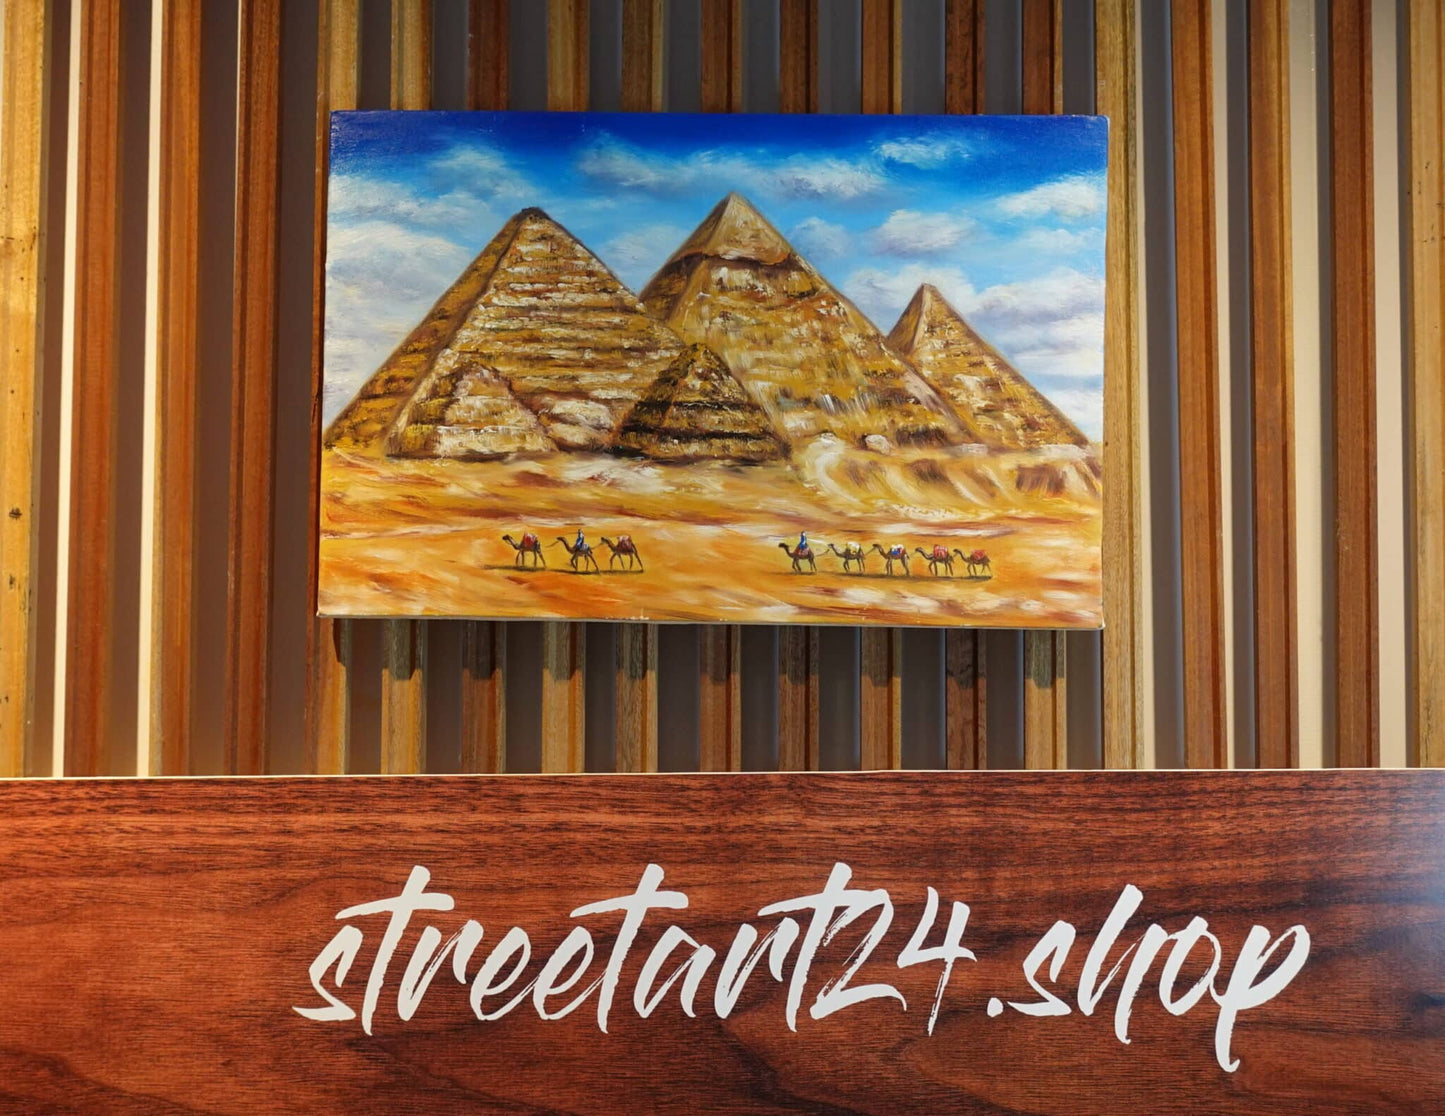 The Pyramids of Giza 60 x 40 cm